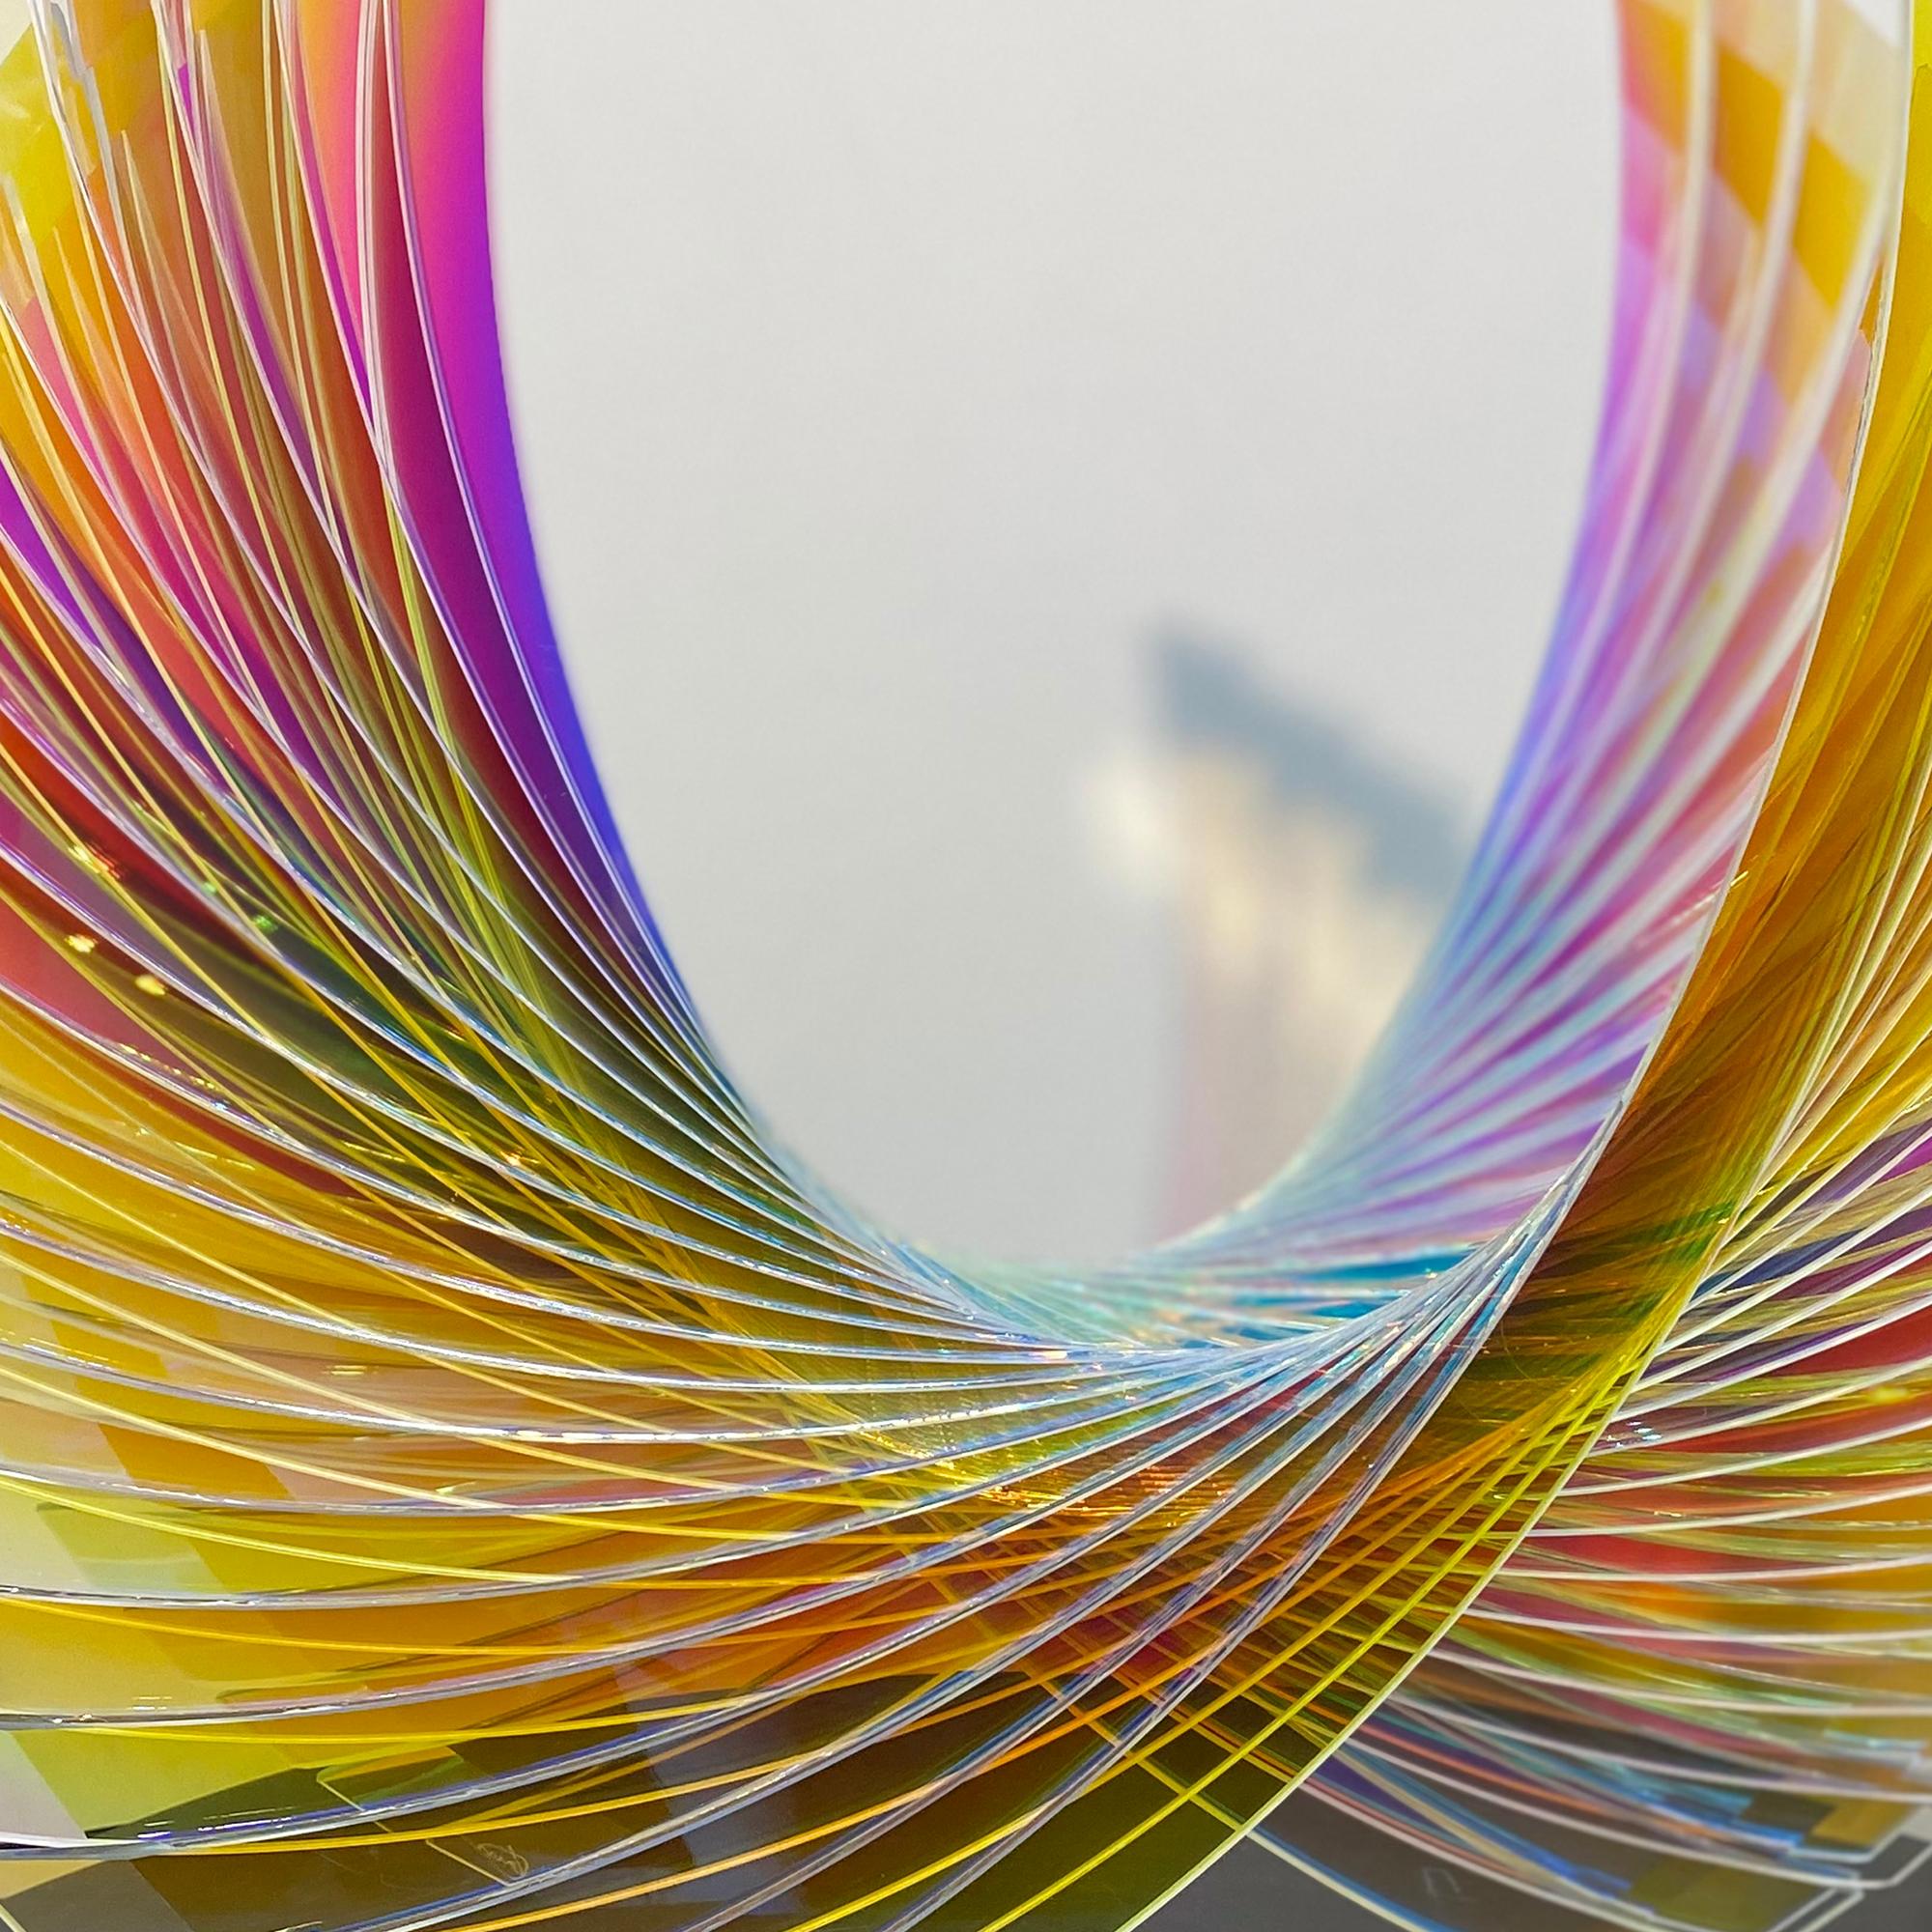 Starfire Sunburst Dichroic Wings' est une sculpture en verre abstraite composée de verre dichroïque multicolore brillant. La sculpture est d'une belle simplicité avec ses lignes entrelacées, ainsi que sa représentation inspirée des ailes.